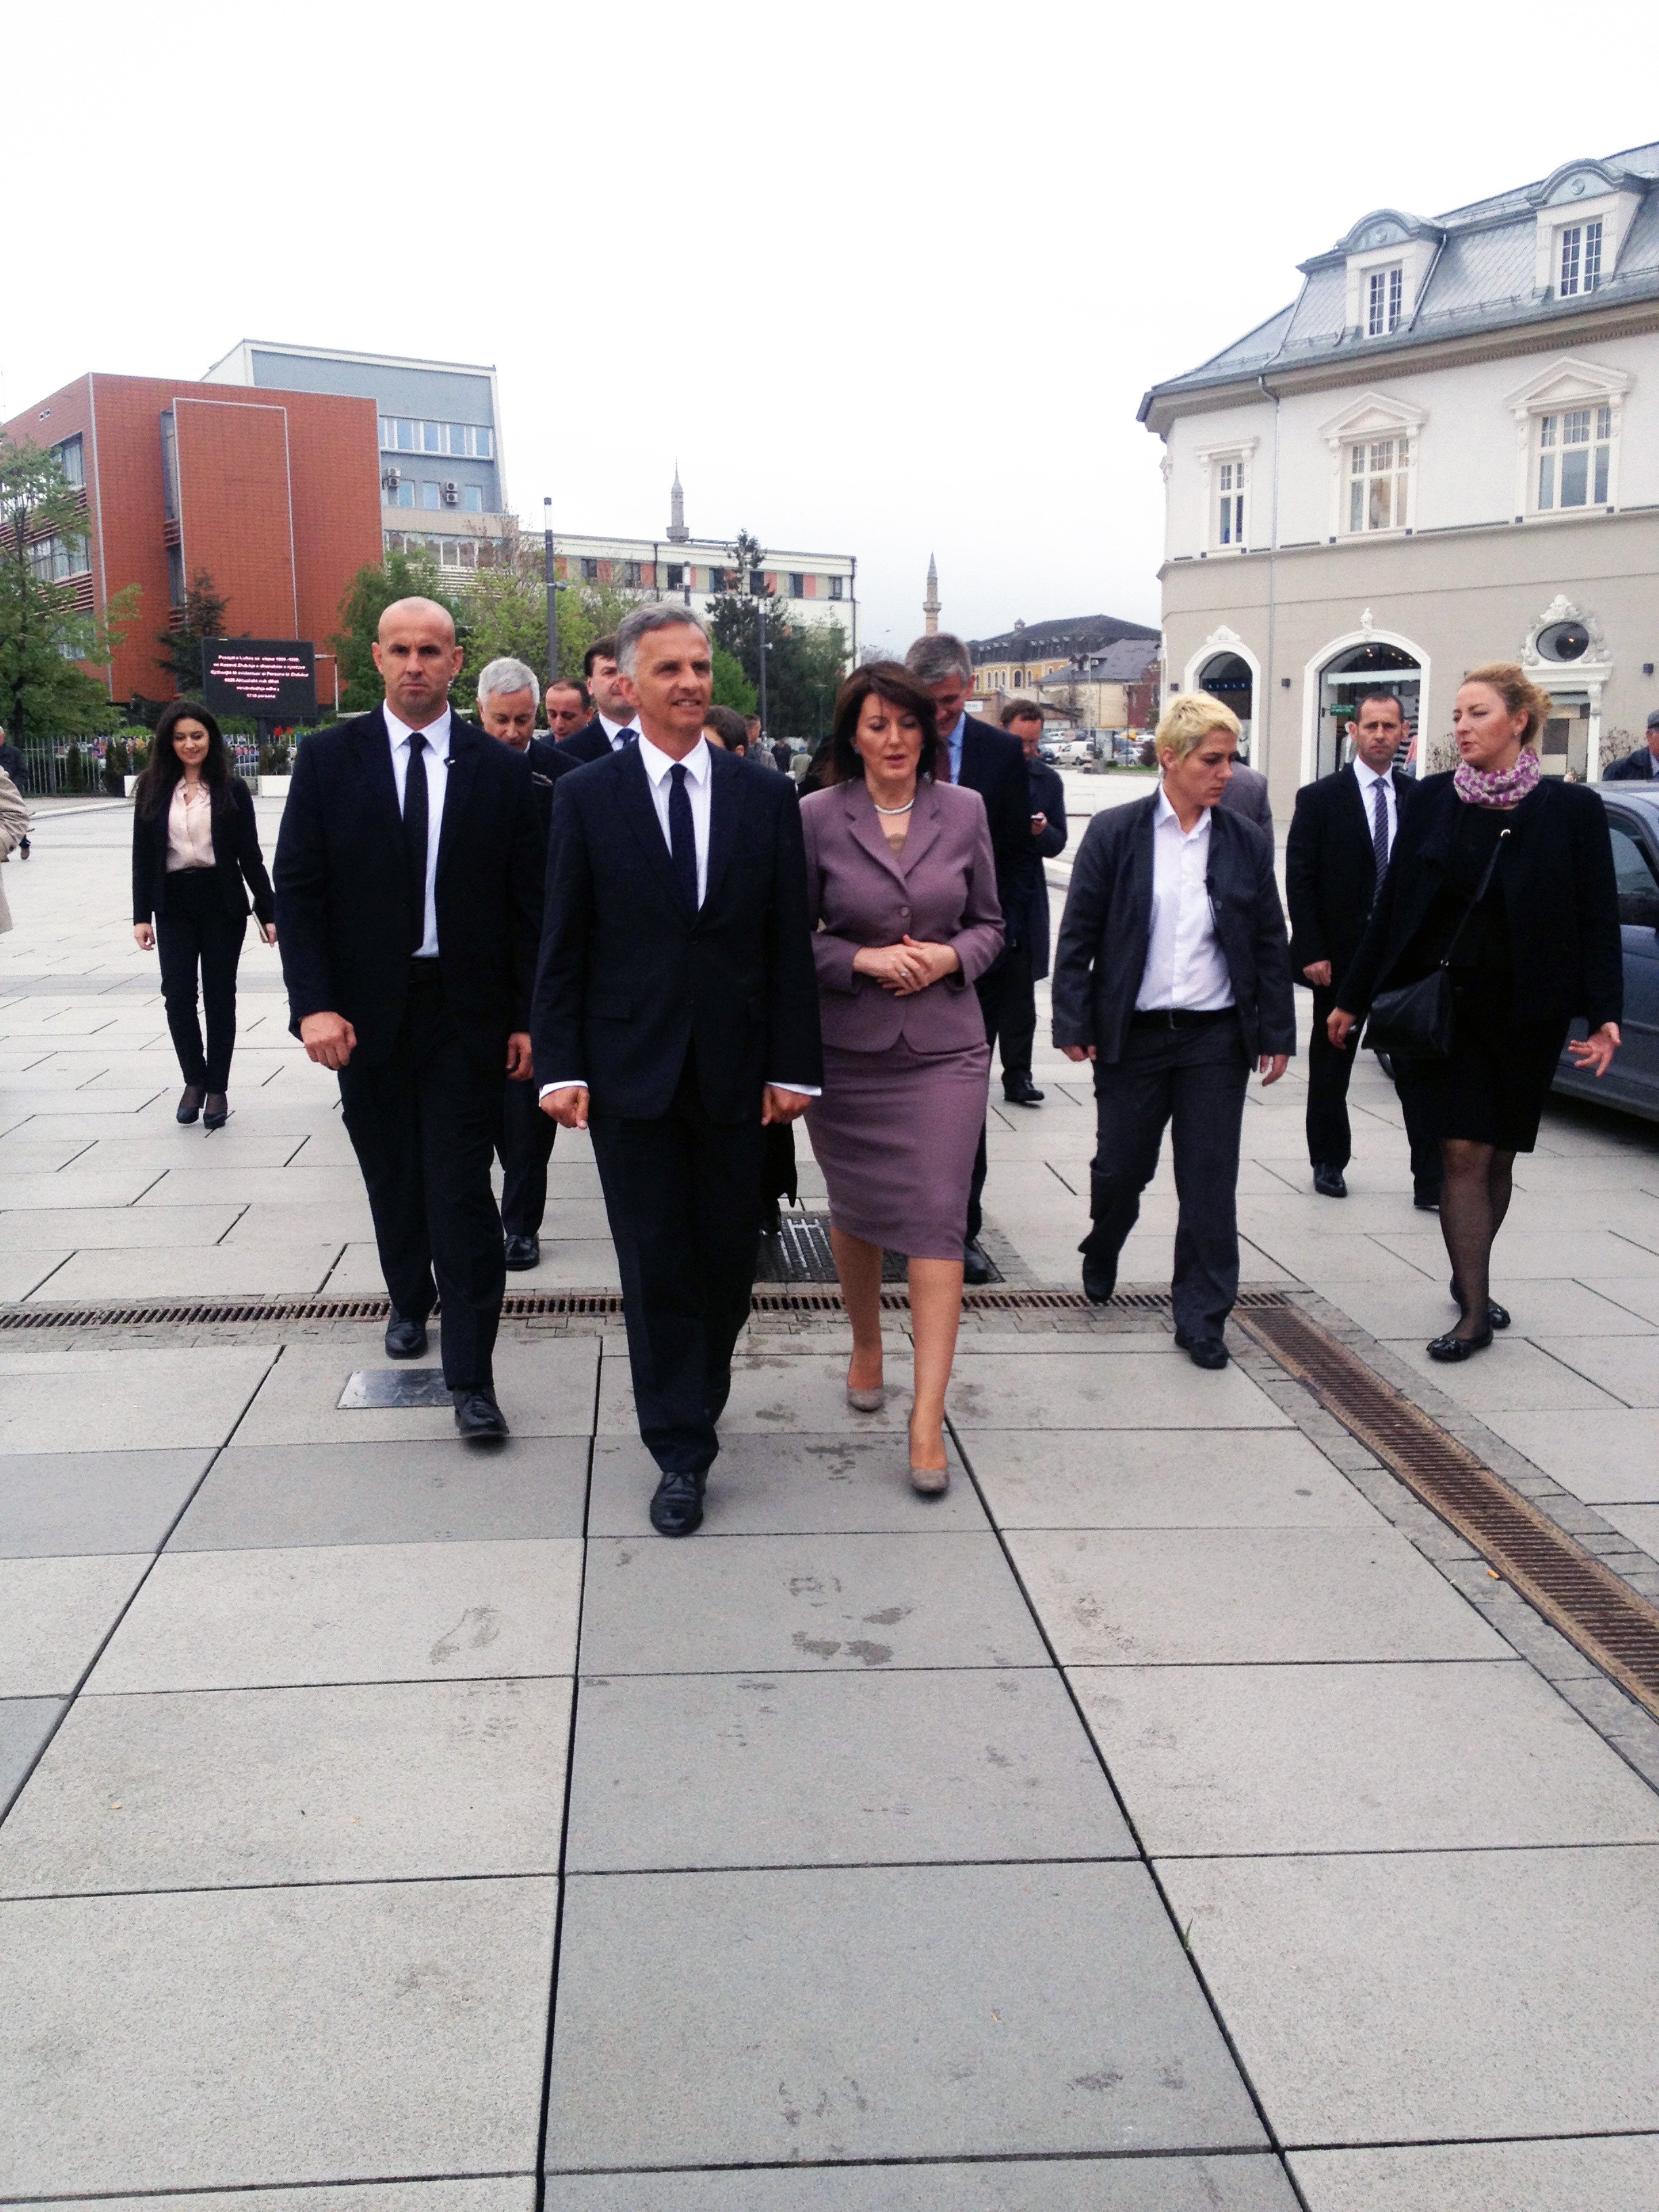 Didier Burkhalter and Atifete Jahjaga, President of Kosovo, walk through the streets of Pristina